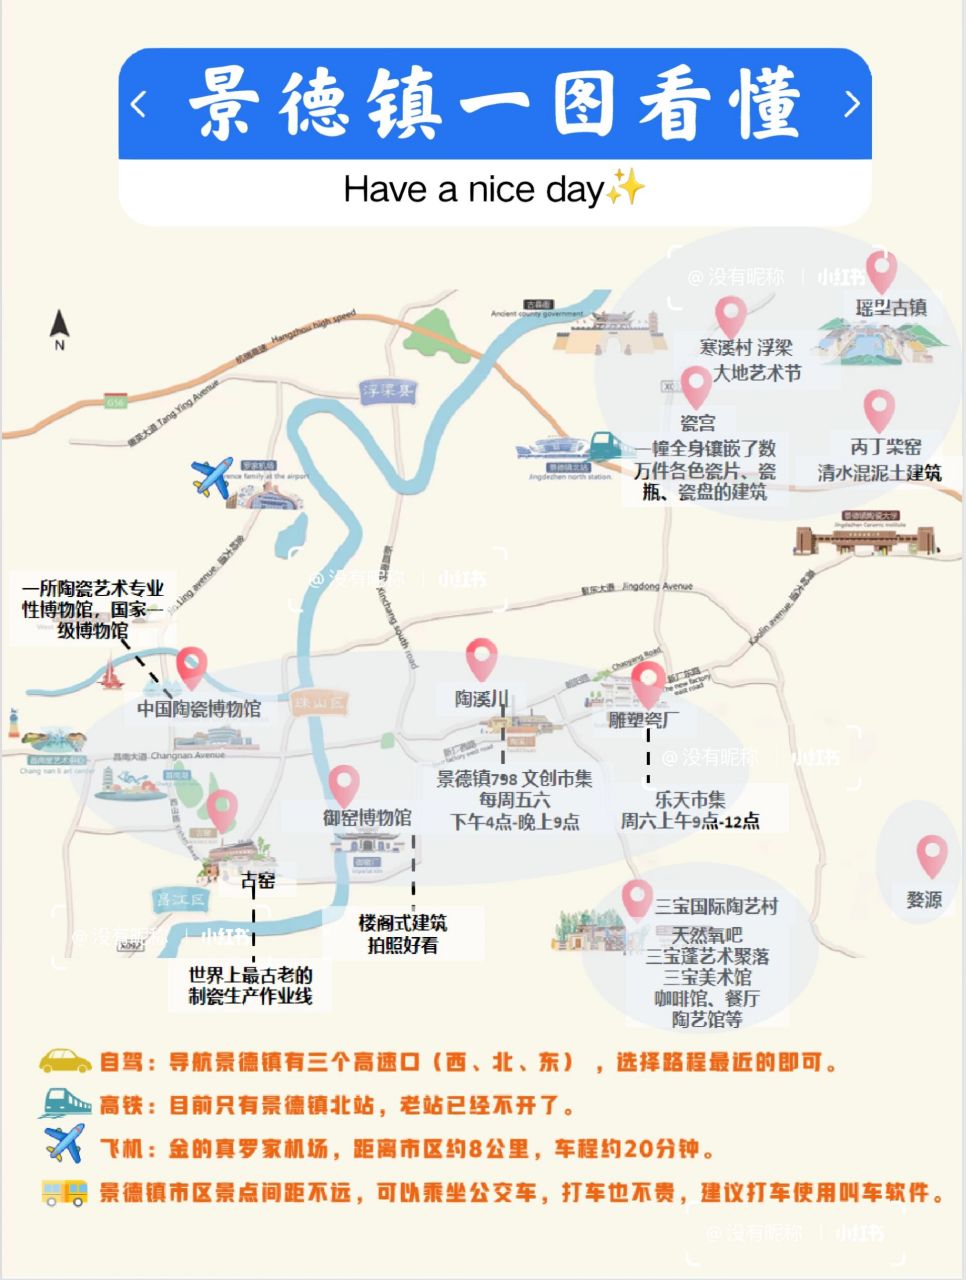 景德镇丨一图看懂6015全网最走心手绘地图 来景德镇行程怎么安排?